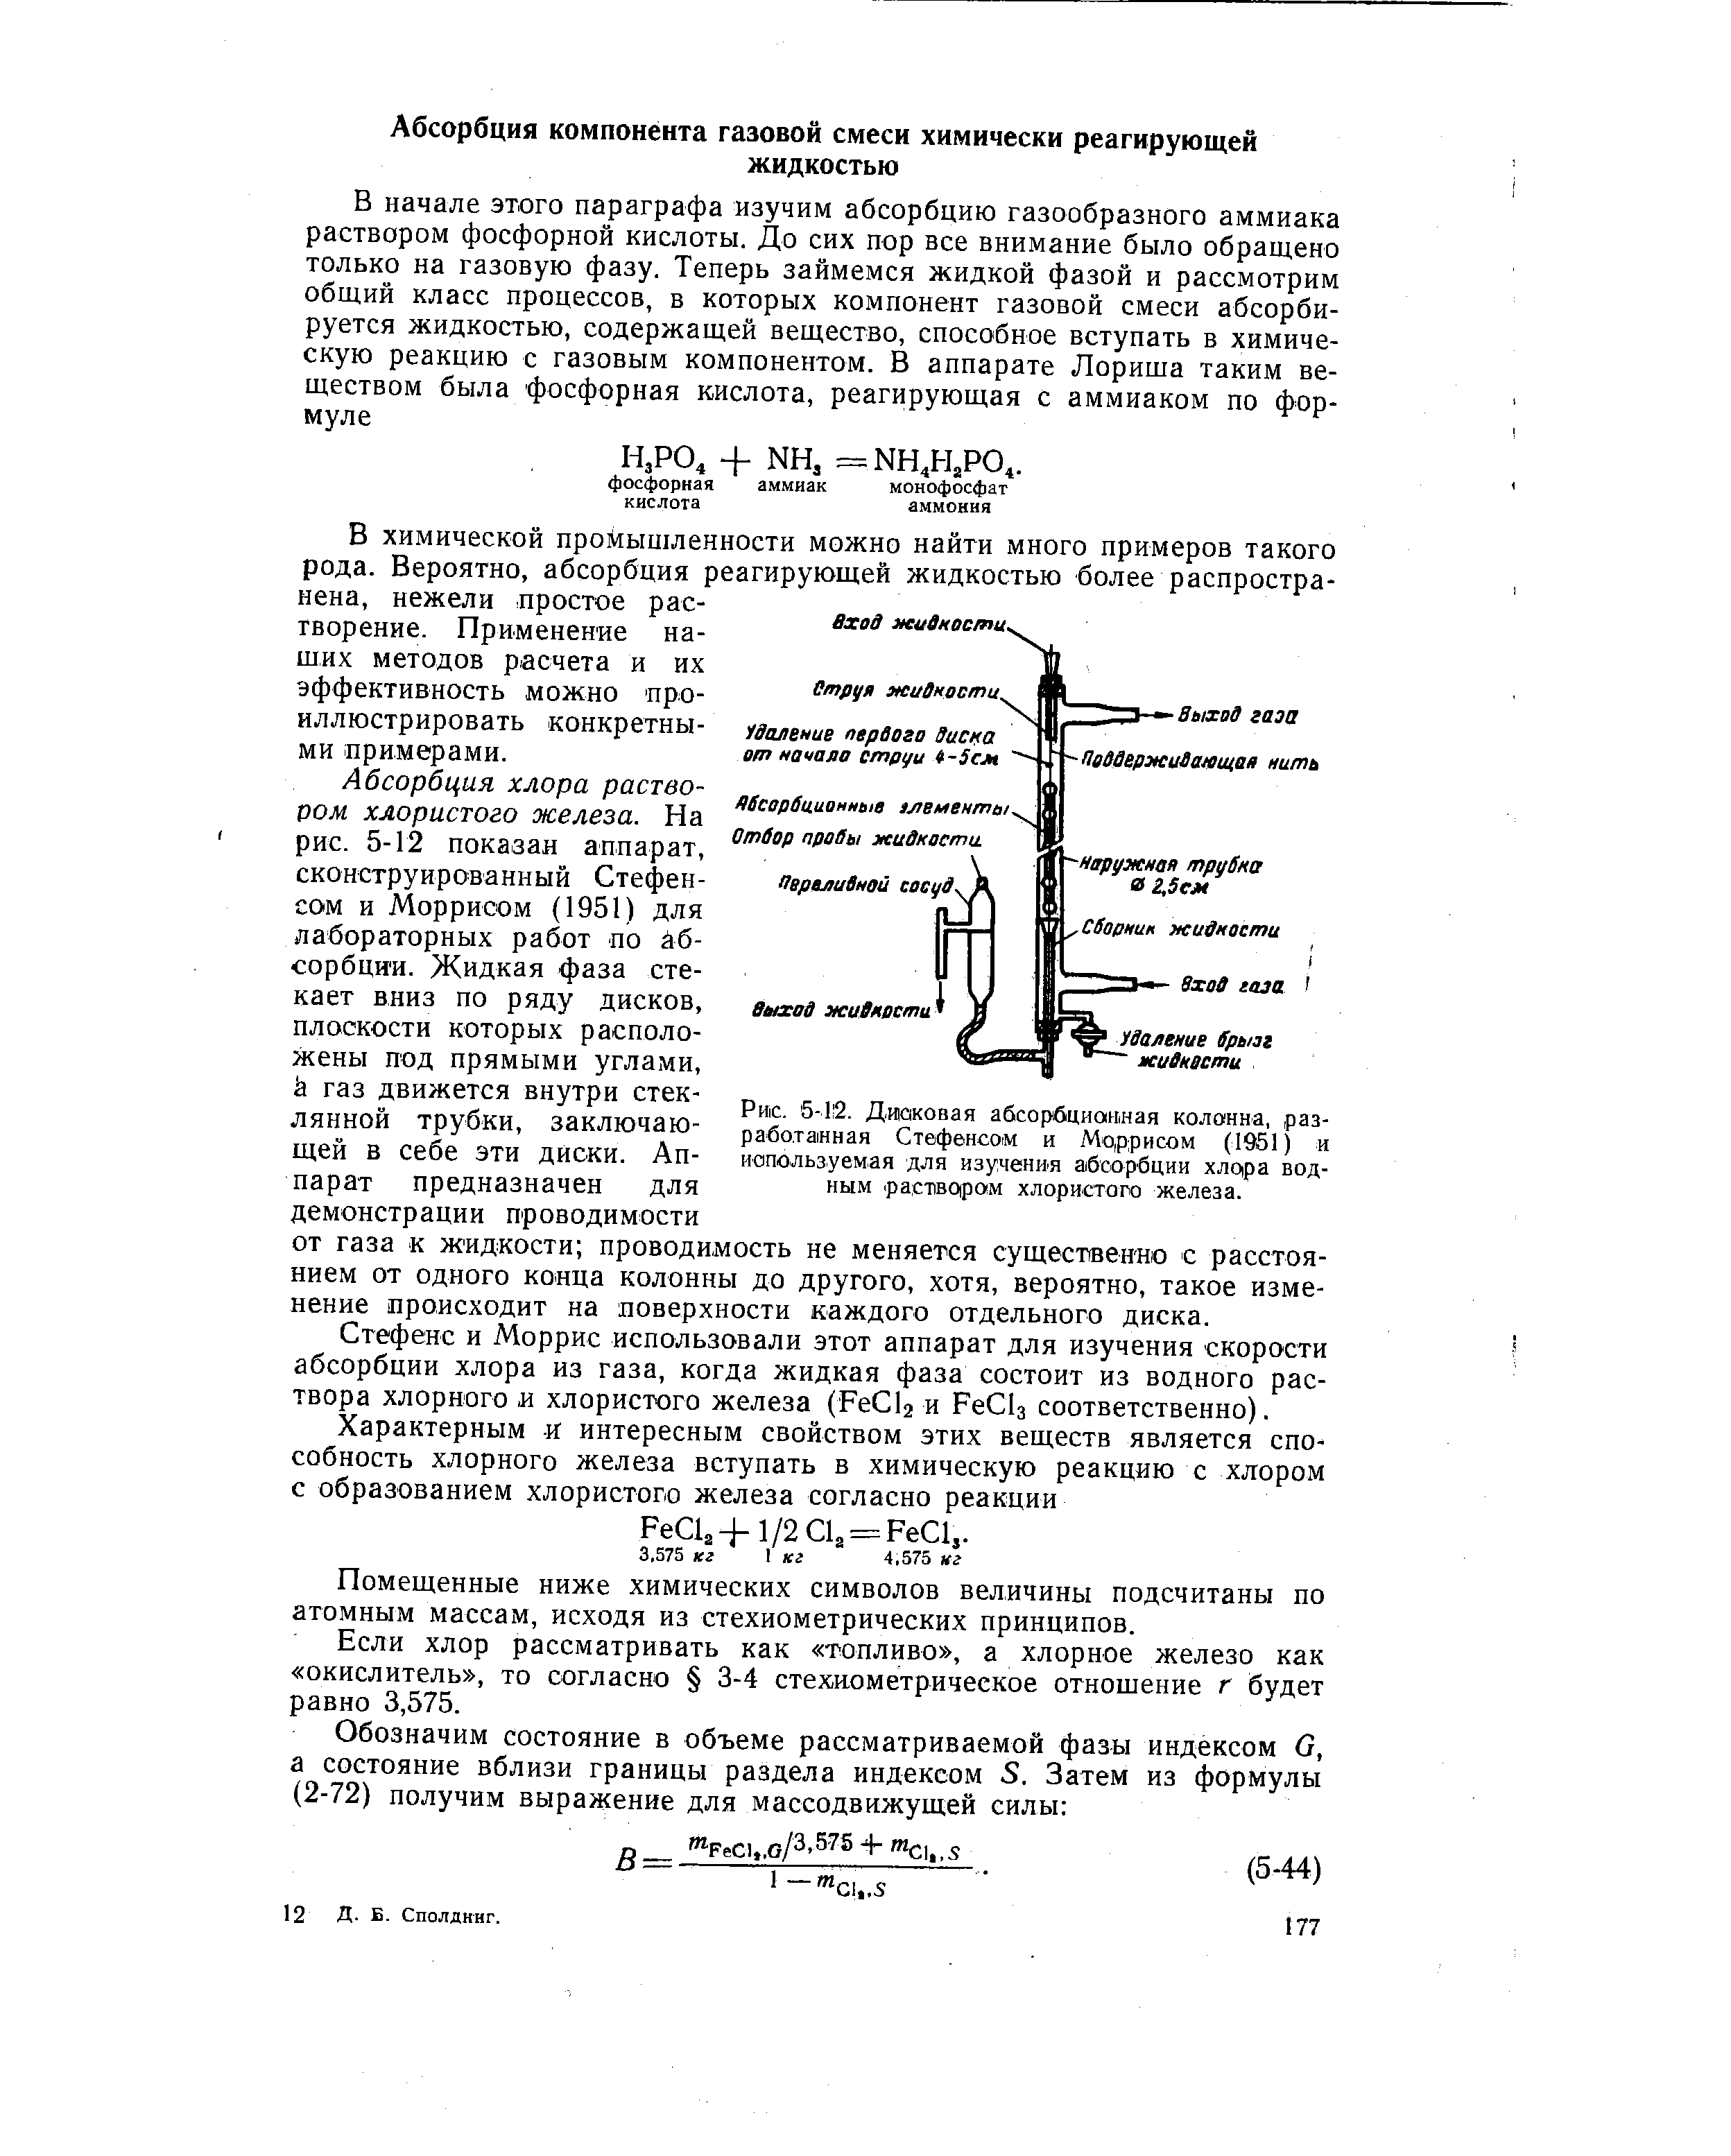 Рис. 5-1 2. Дисковая абсорбционная колонна, разработанная Стефенсом и Моррисом (1951) и иапользуем.ая для изучения абсорбции хлора водным. pa TsqpoiM хлористого железа.
